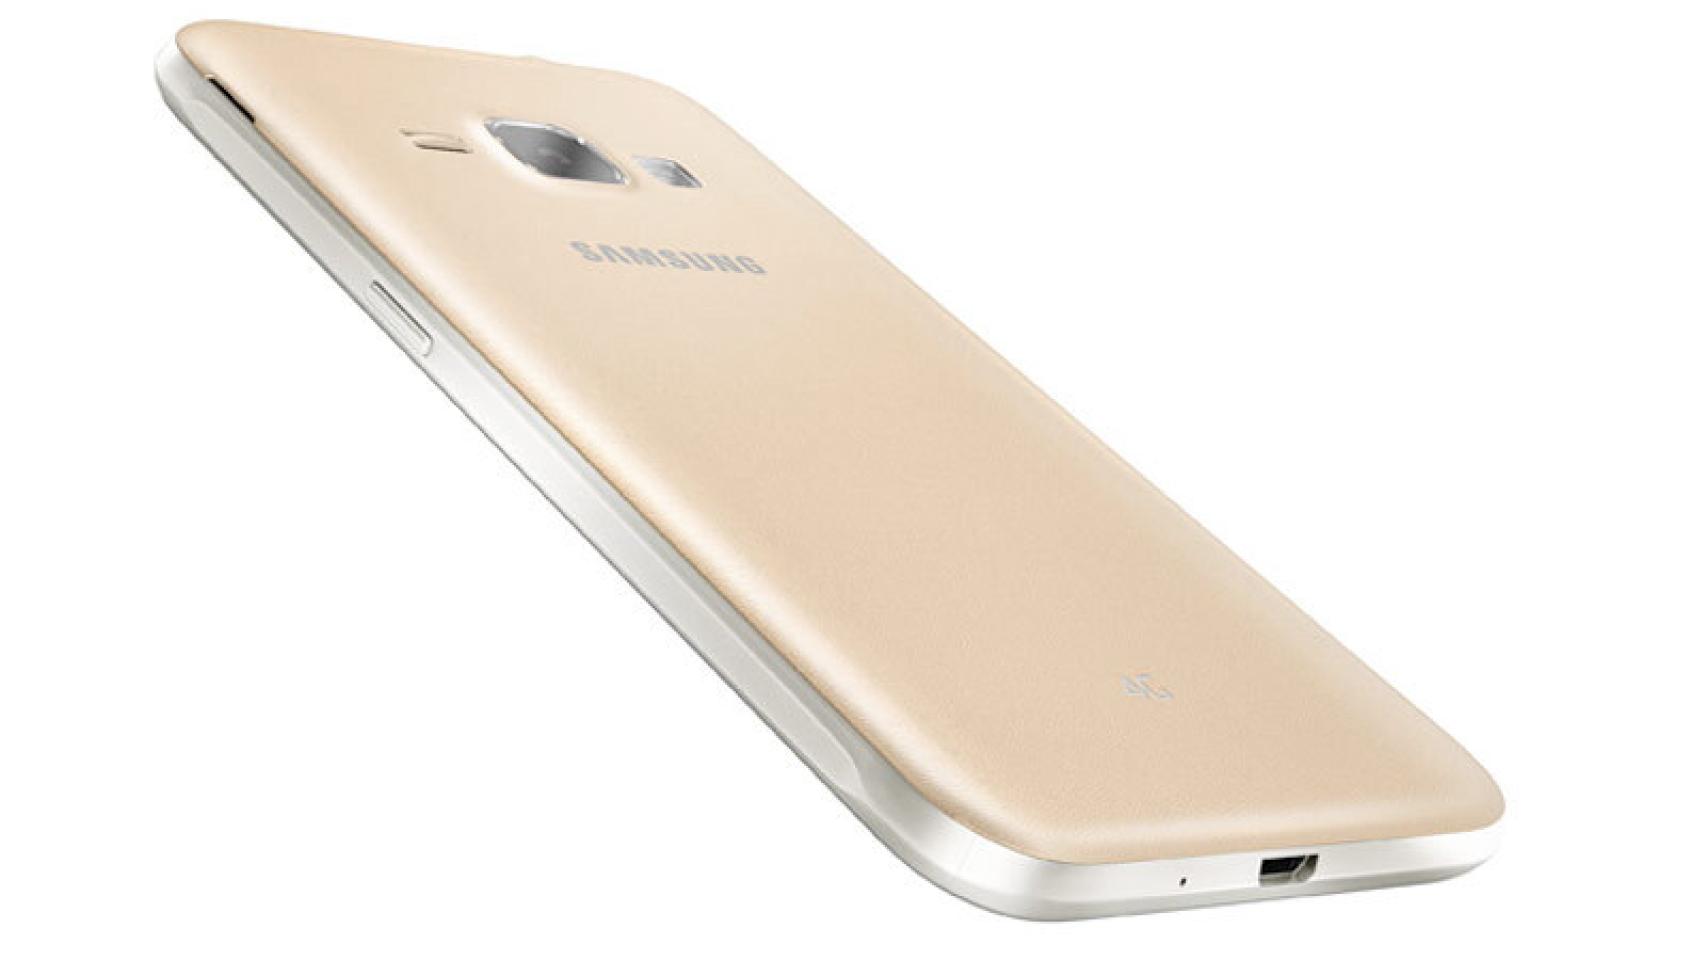 Nuevo Samsung Galaxy J2 Ace con características muy básicas